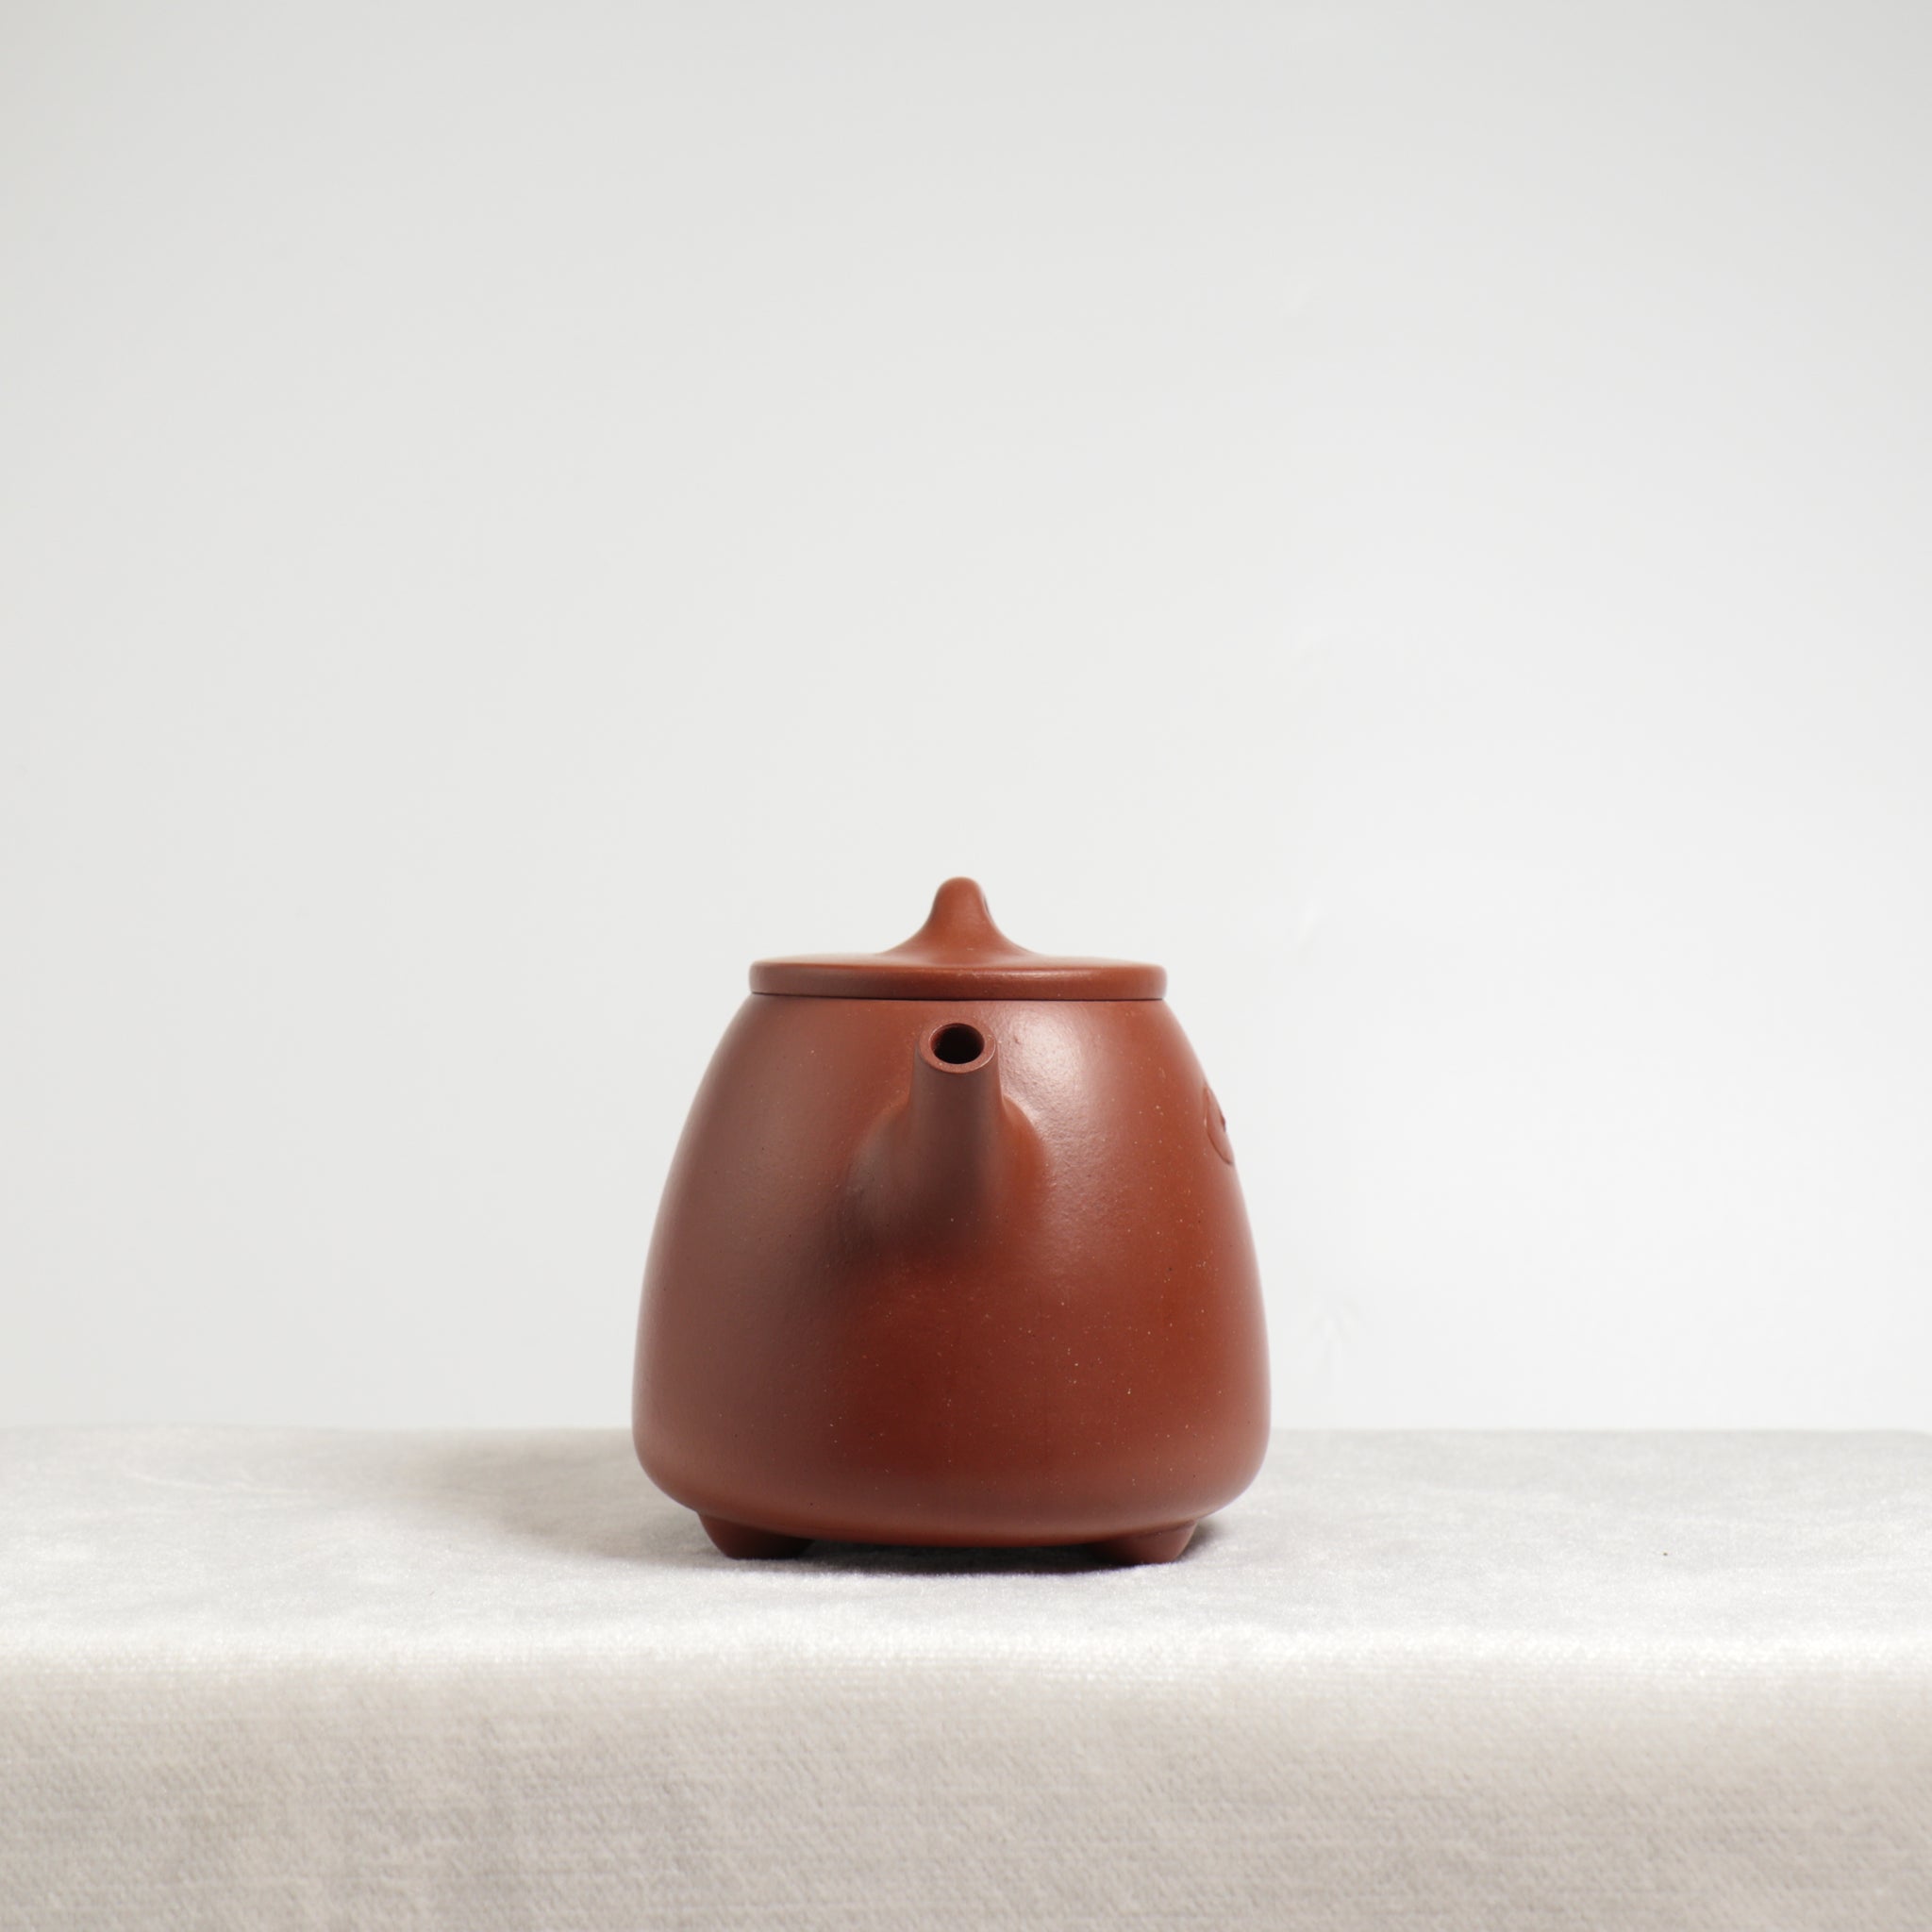 【高石瓢】原礦大紅袍雕刻紫砂茶壺